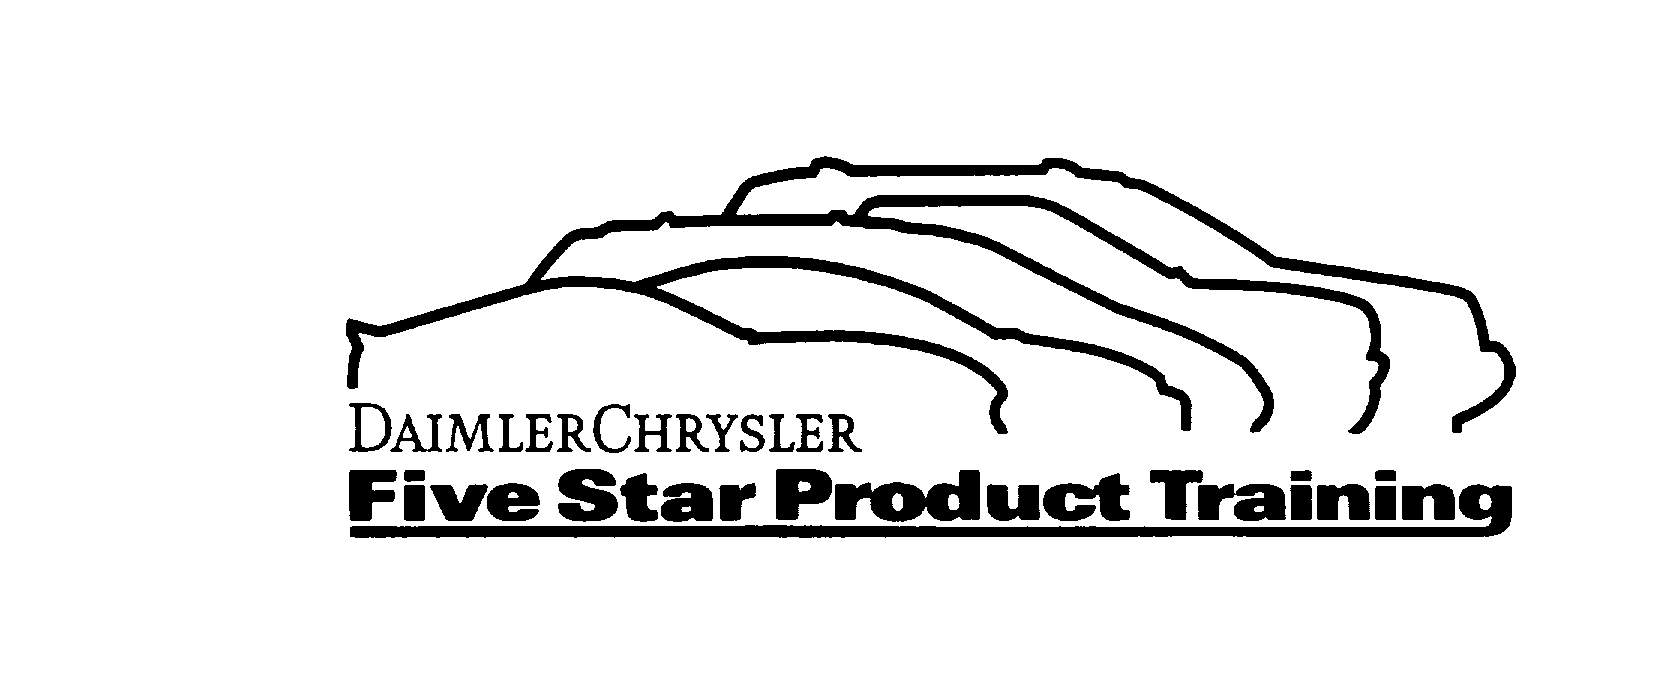 Trademark Logo DAIMLER CHRYSLER FIVE STAR PRODUCT TRAINING